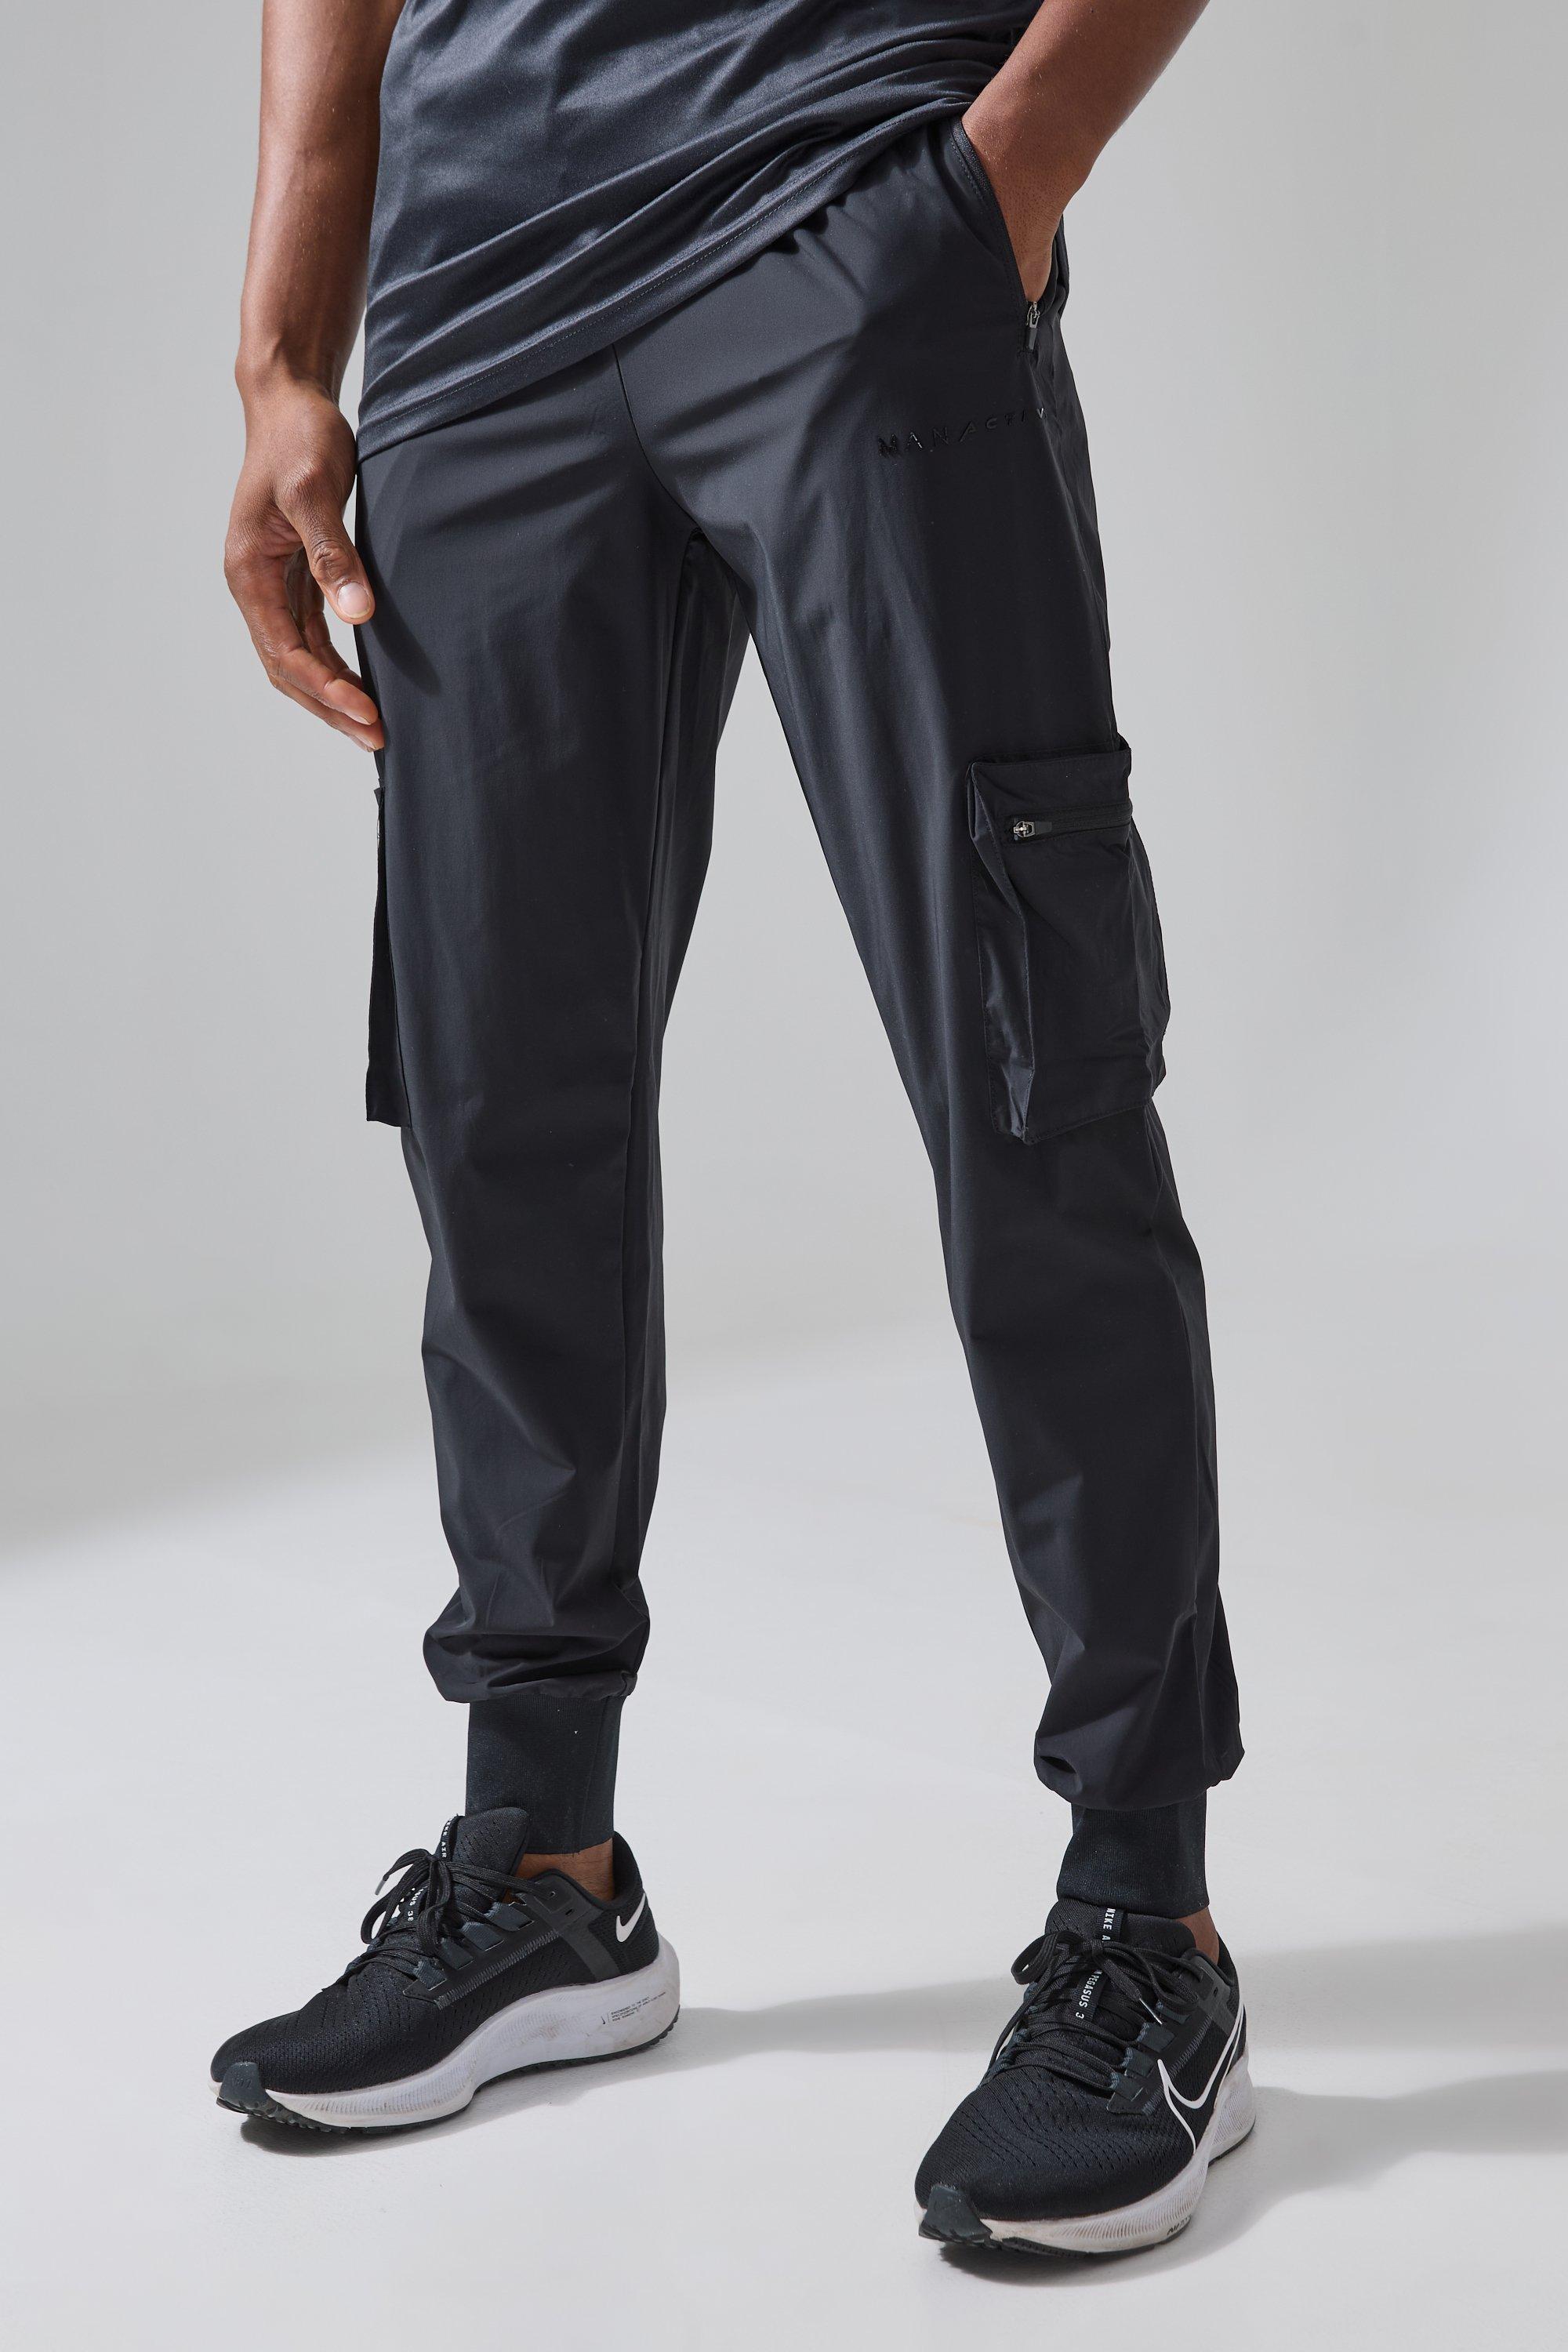 pantalon cargo de sport technique - man active homme - noir - s, noir